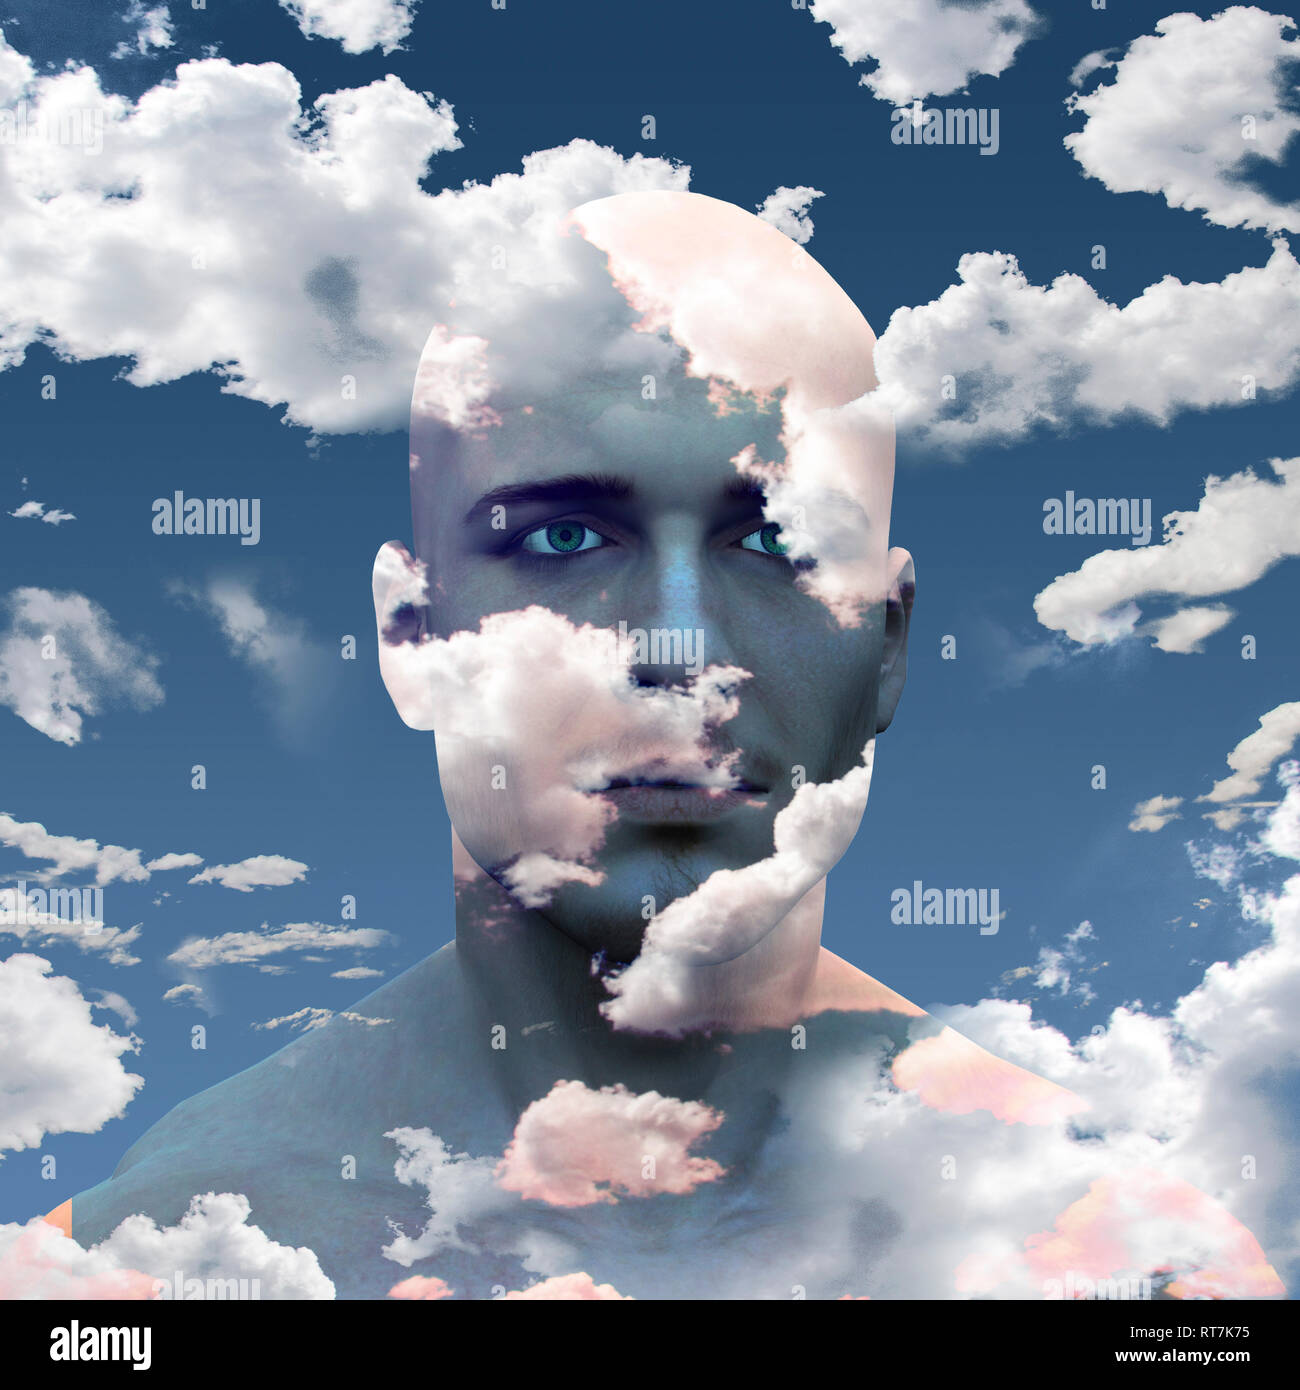 Облако над человеком. Лицо человека в облаках. Человек на облаке. Человек туча. Человек с облаками в голове.